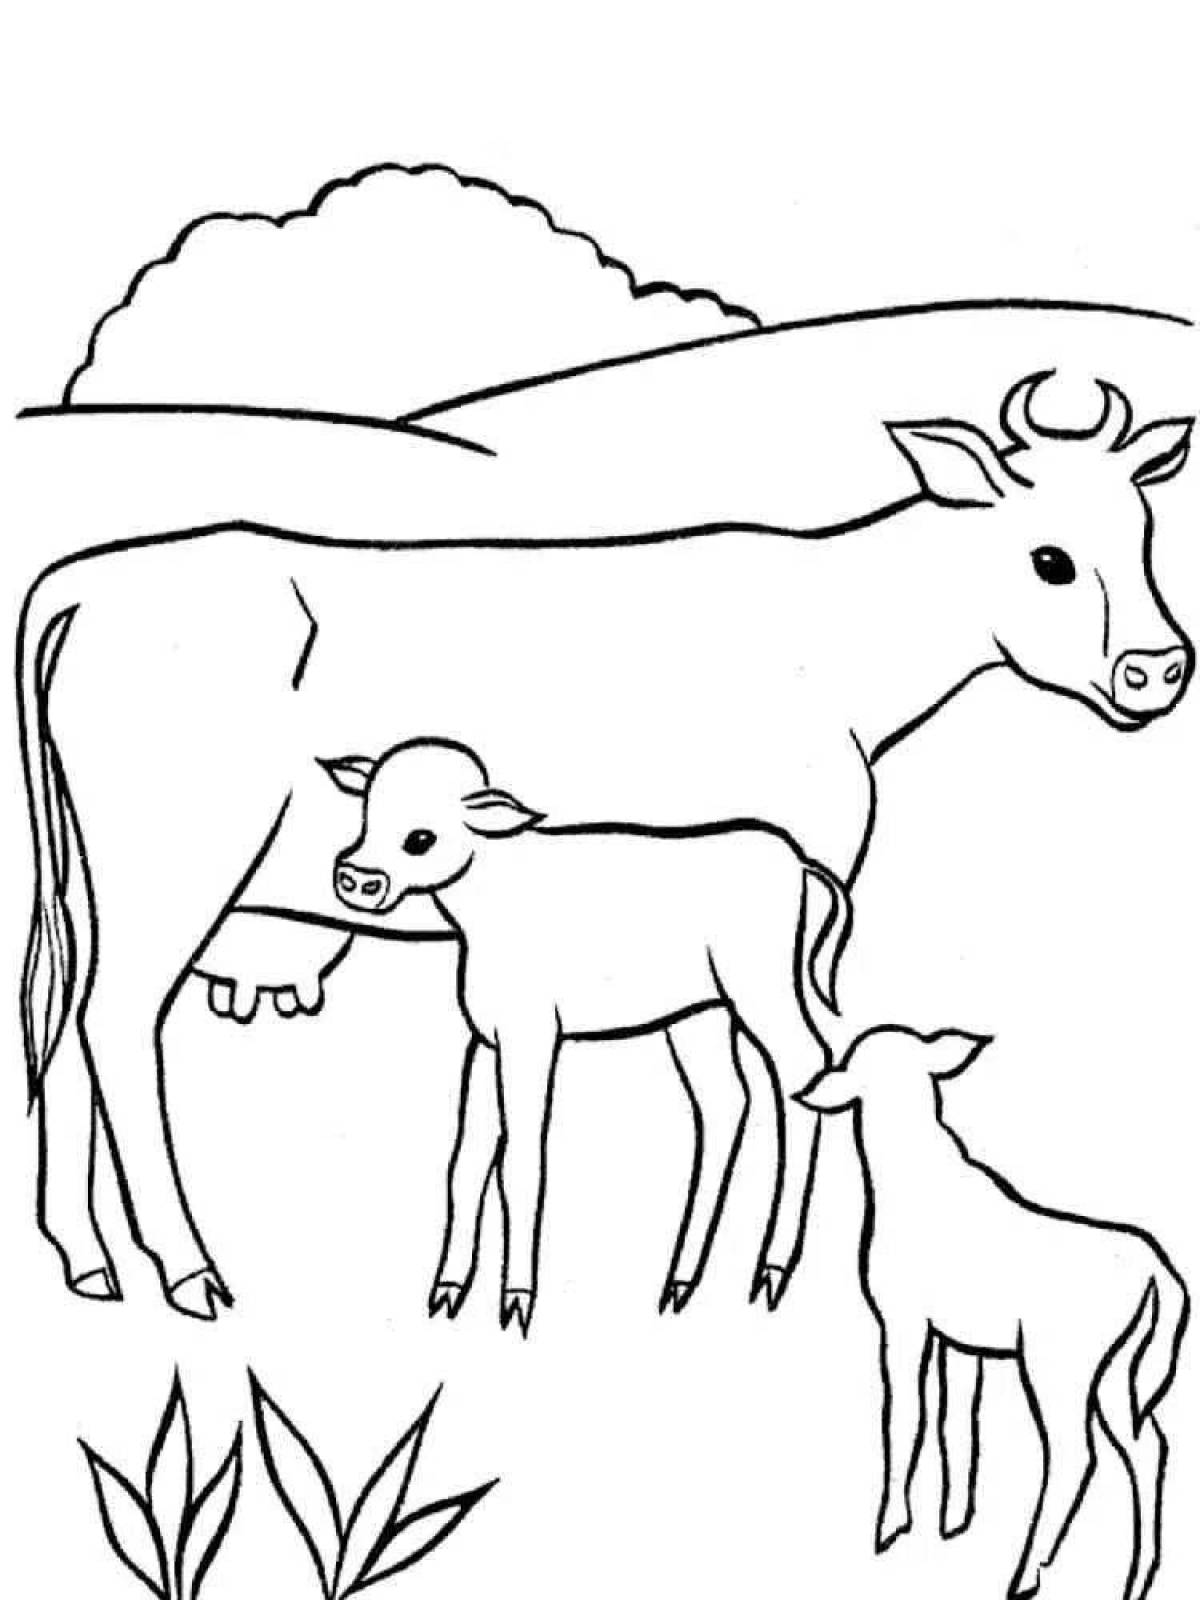 Анимированная страница раскраски коровы и теленка